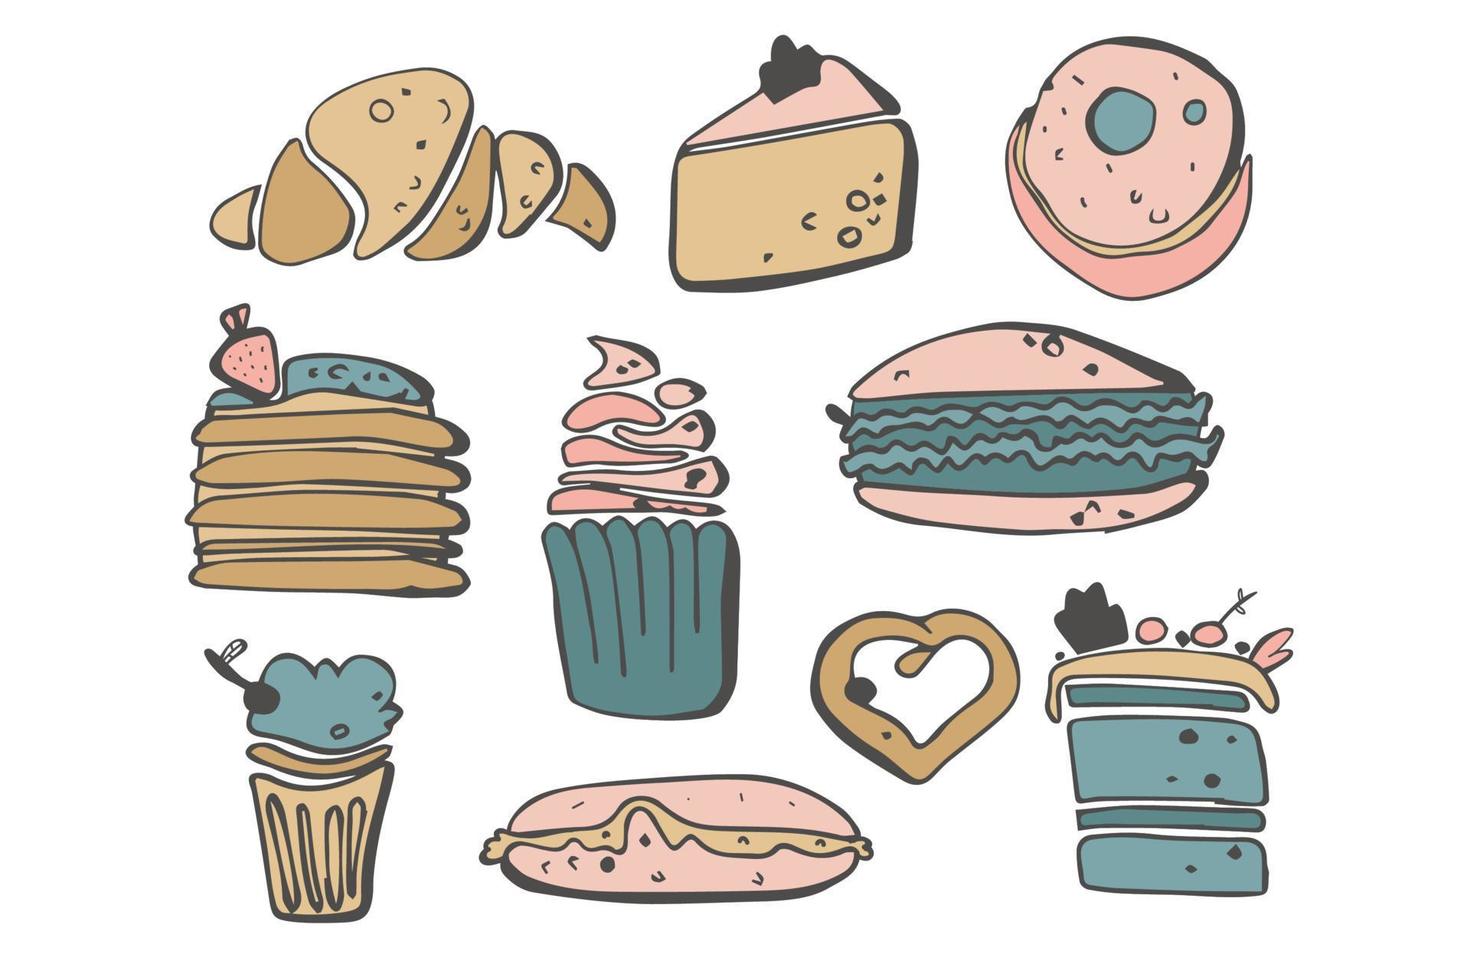 juego de dulces, postres y caramelos de fideos. helado, pastel, donut. garabatos vectoriales. ilustración de dibujo vectorial. menú de postres, elementos dibujados a mano. vector